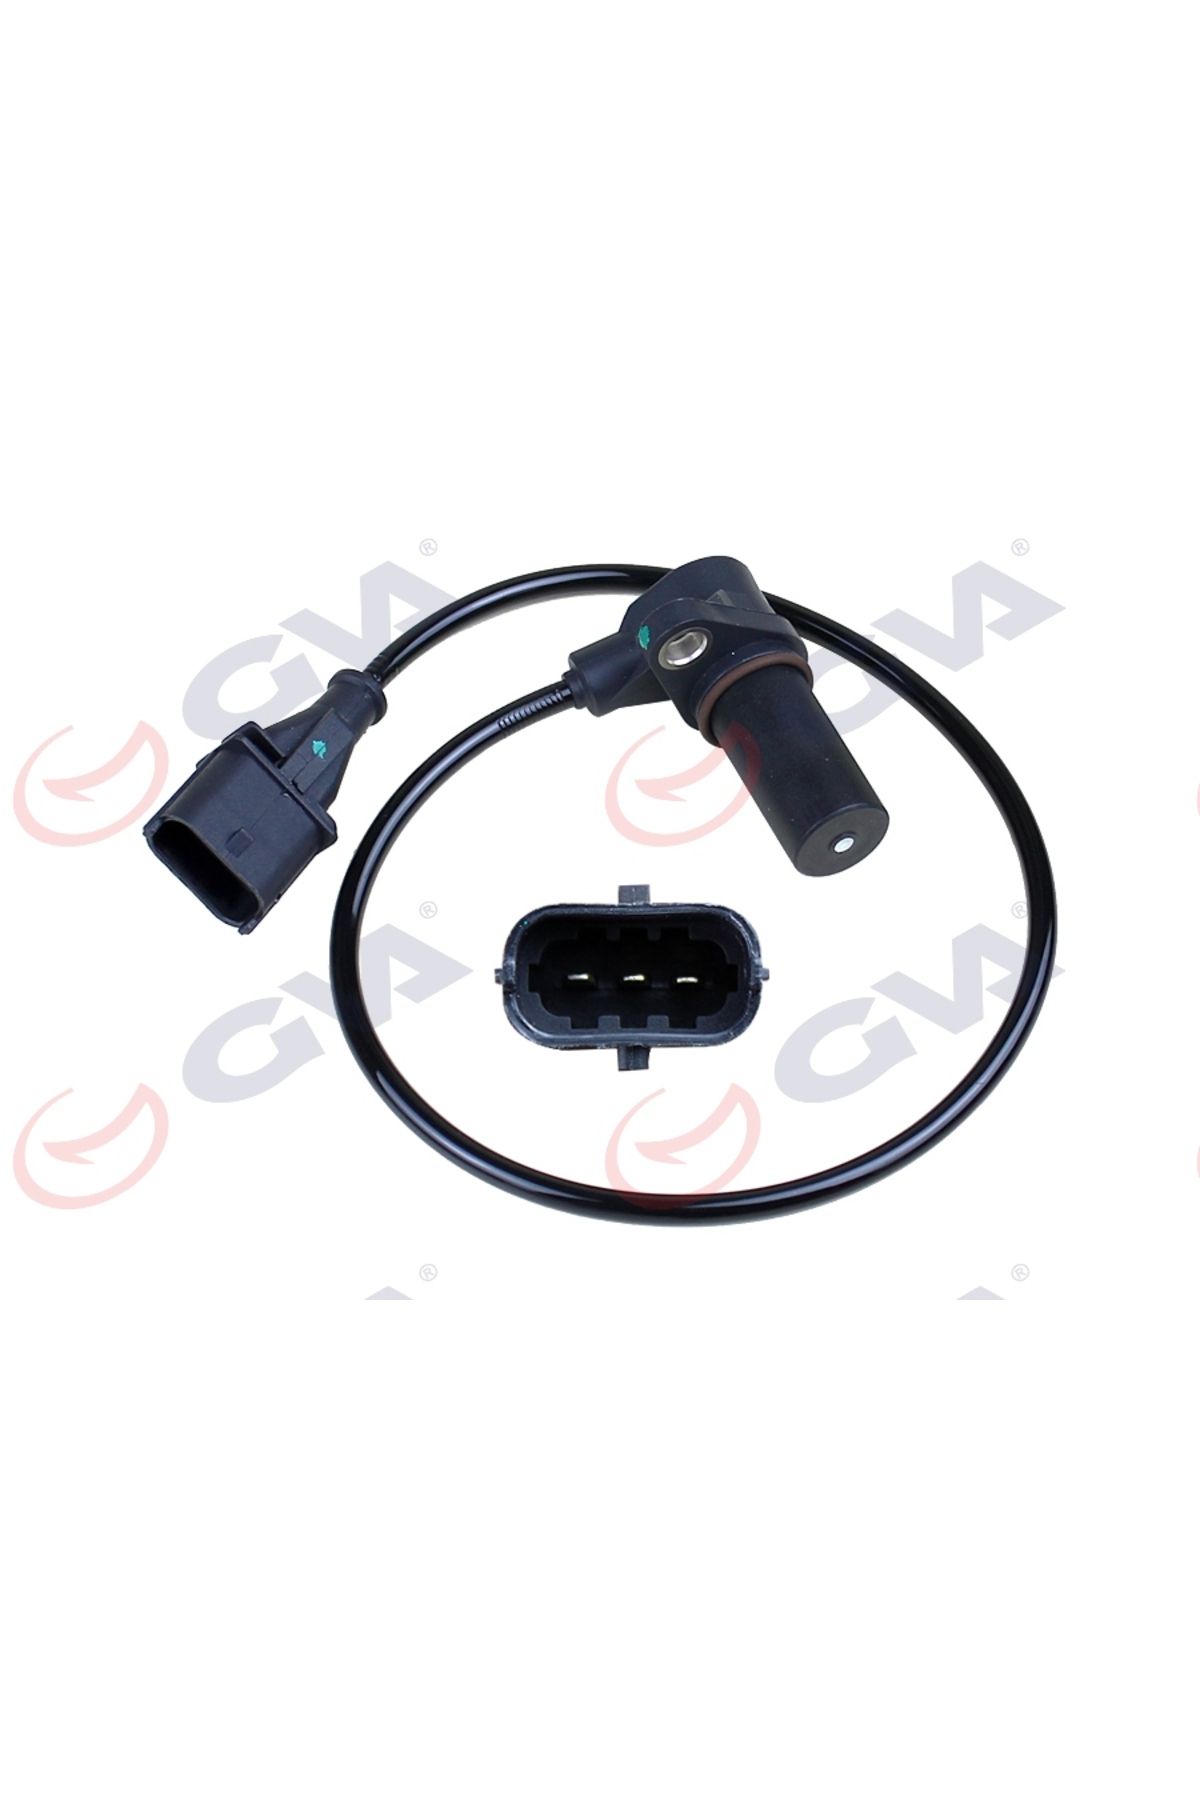 GVA Krank Mil Sensörü Doblo-marea-bravo-alfa Romeo 147 1.9 Jtd 01